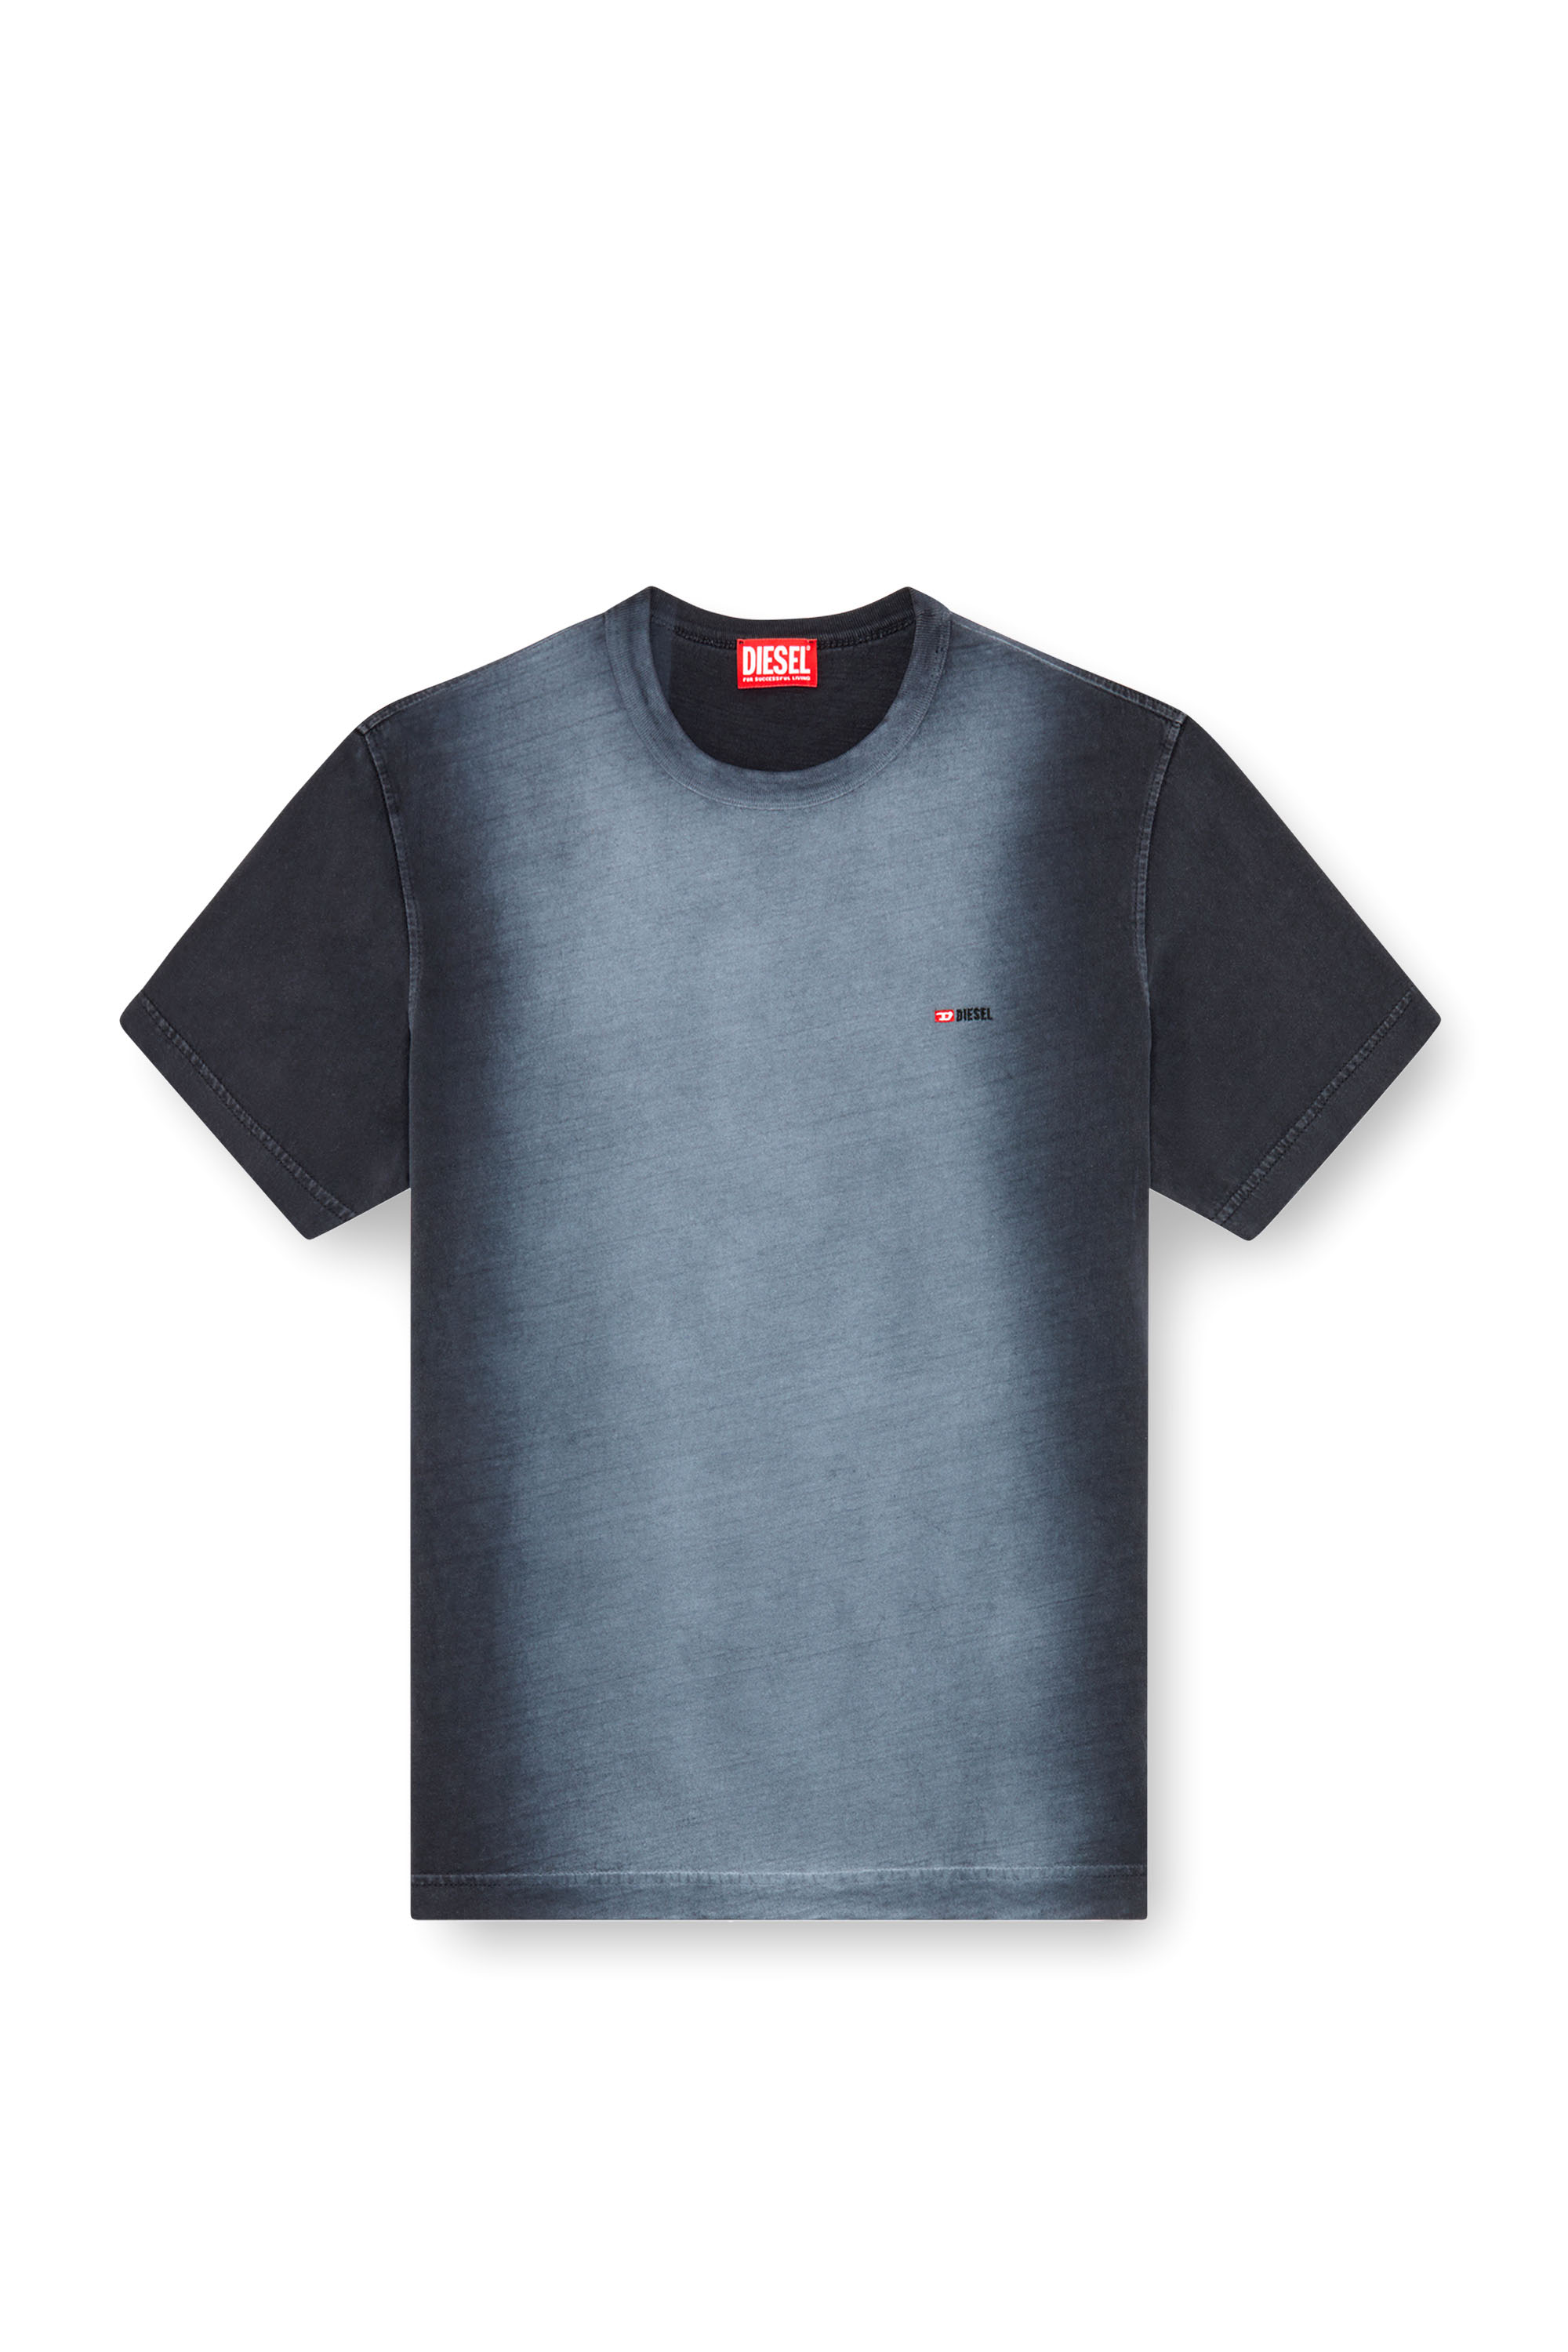 Diesel - T-ADJUST-Q2, Man T-shirt in sprayed cotton jersey in Black - Image 3